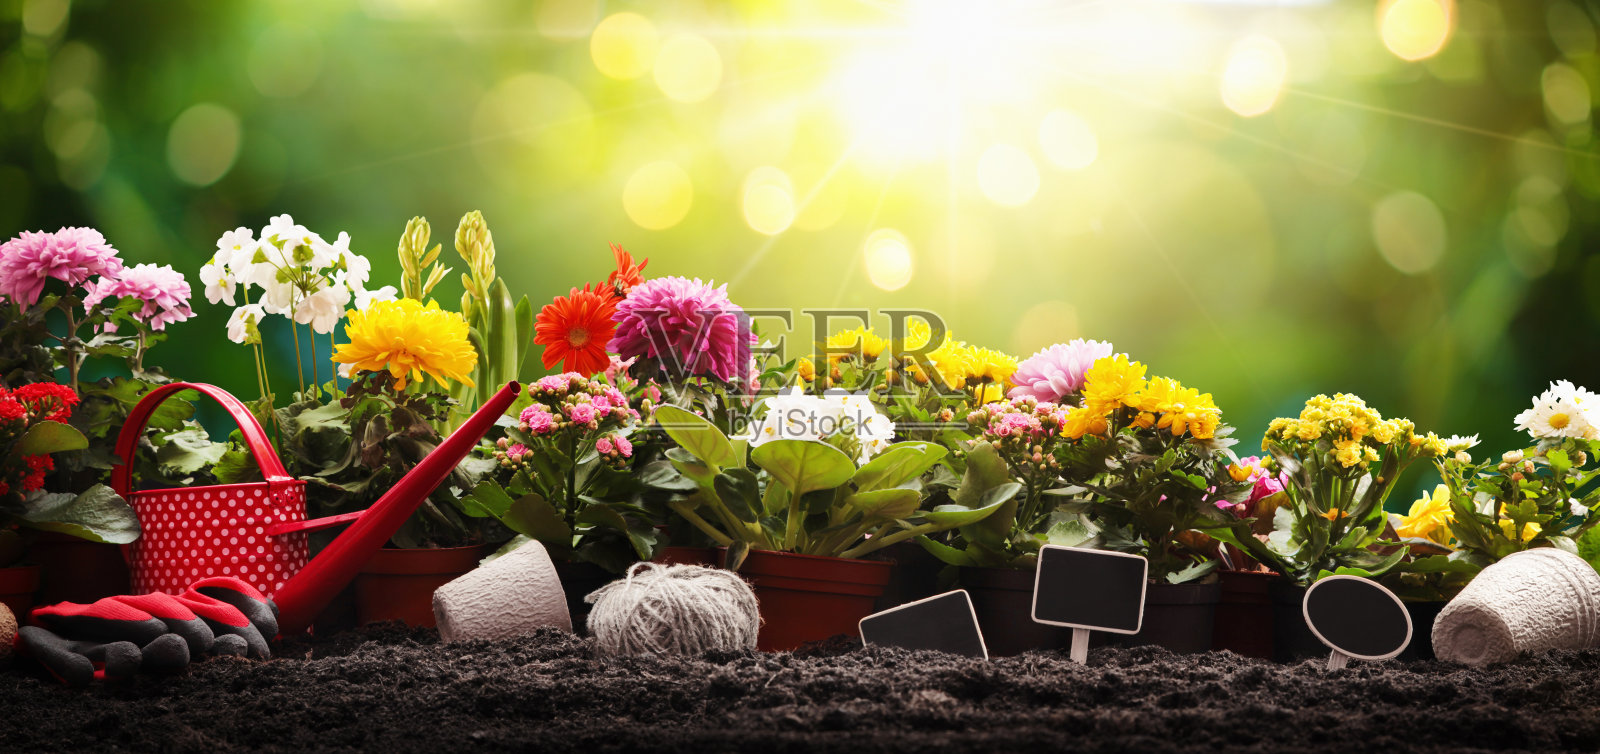 花园鲜花和植物在一个阳光灿烂的背景。园艺的概念照片摄影图片